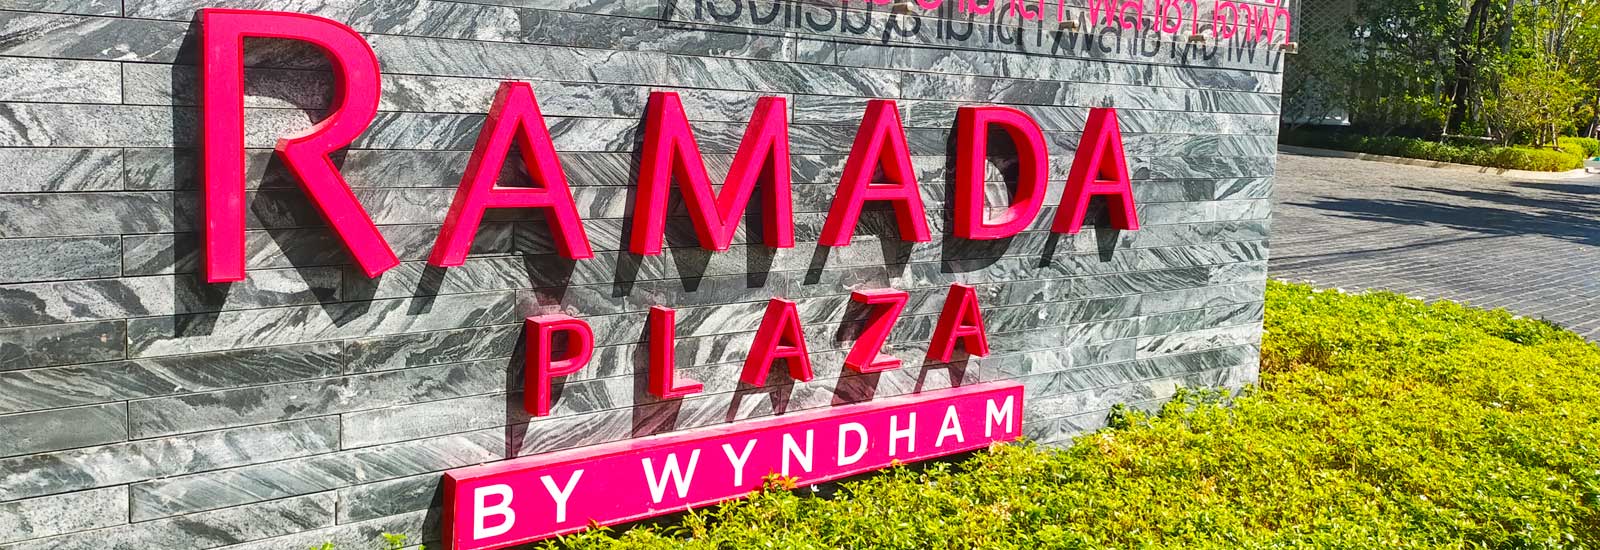 ป้ายโรงแรม Ramada Plaza by Wyndham